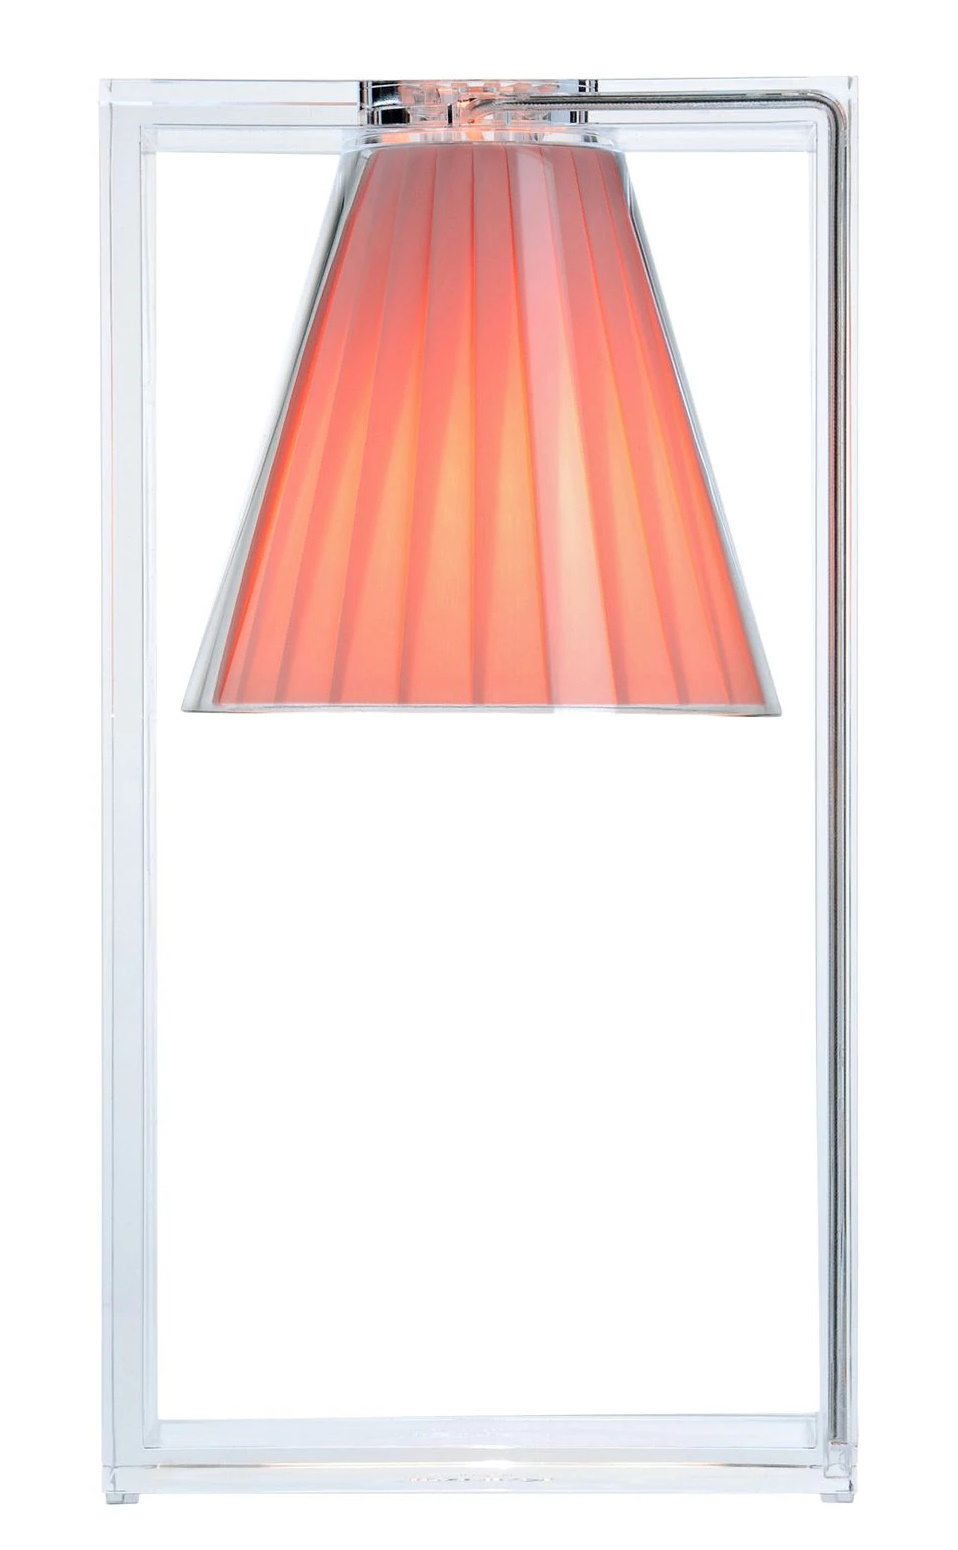 Veioza Kartell Light Air design Eugeni Quitllet 32x17x14cm roz Kartell imagine reduss.ro 2022